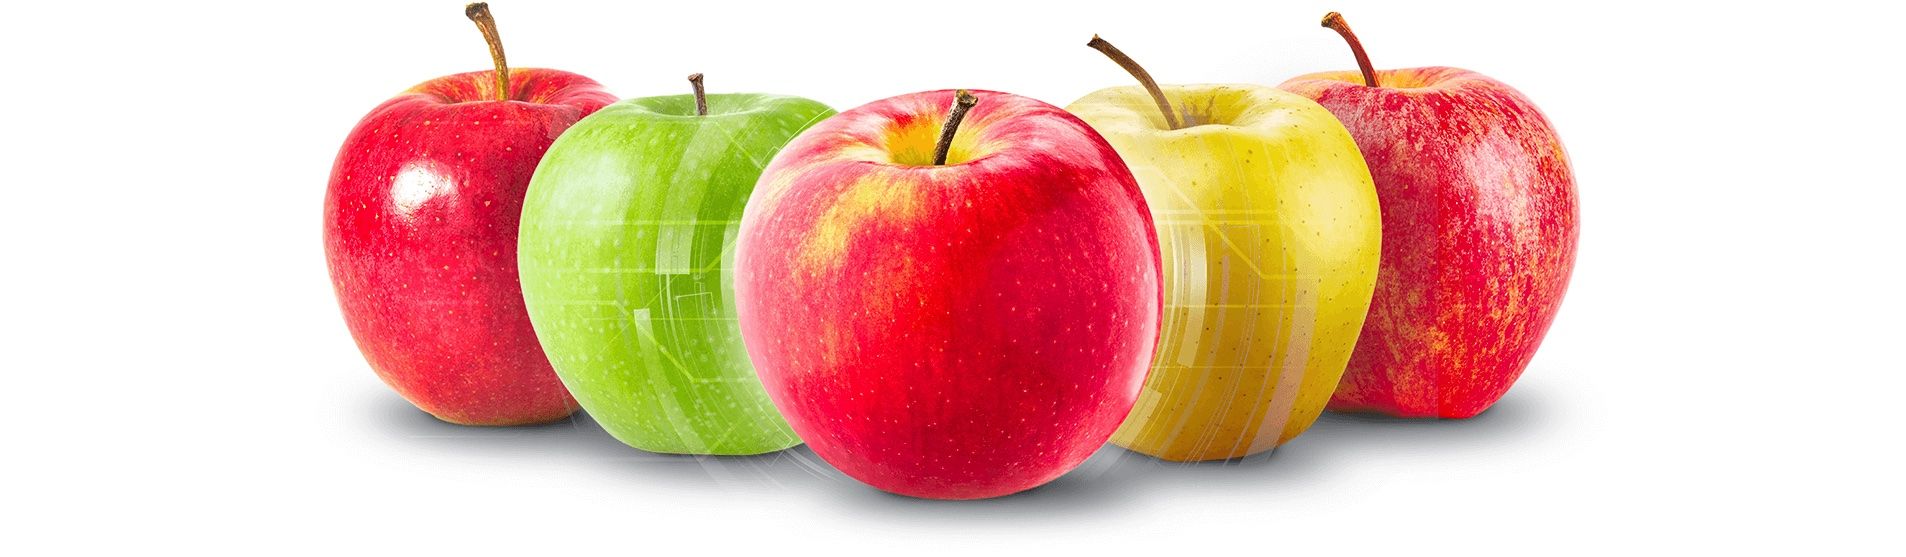 Калибровка яблок - AgroExpert.md